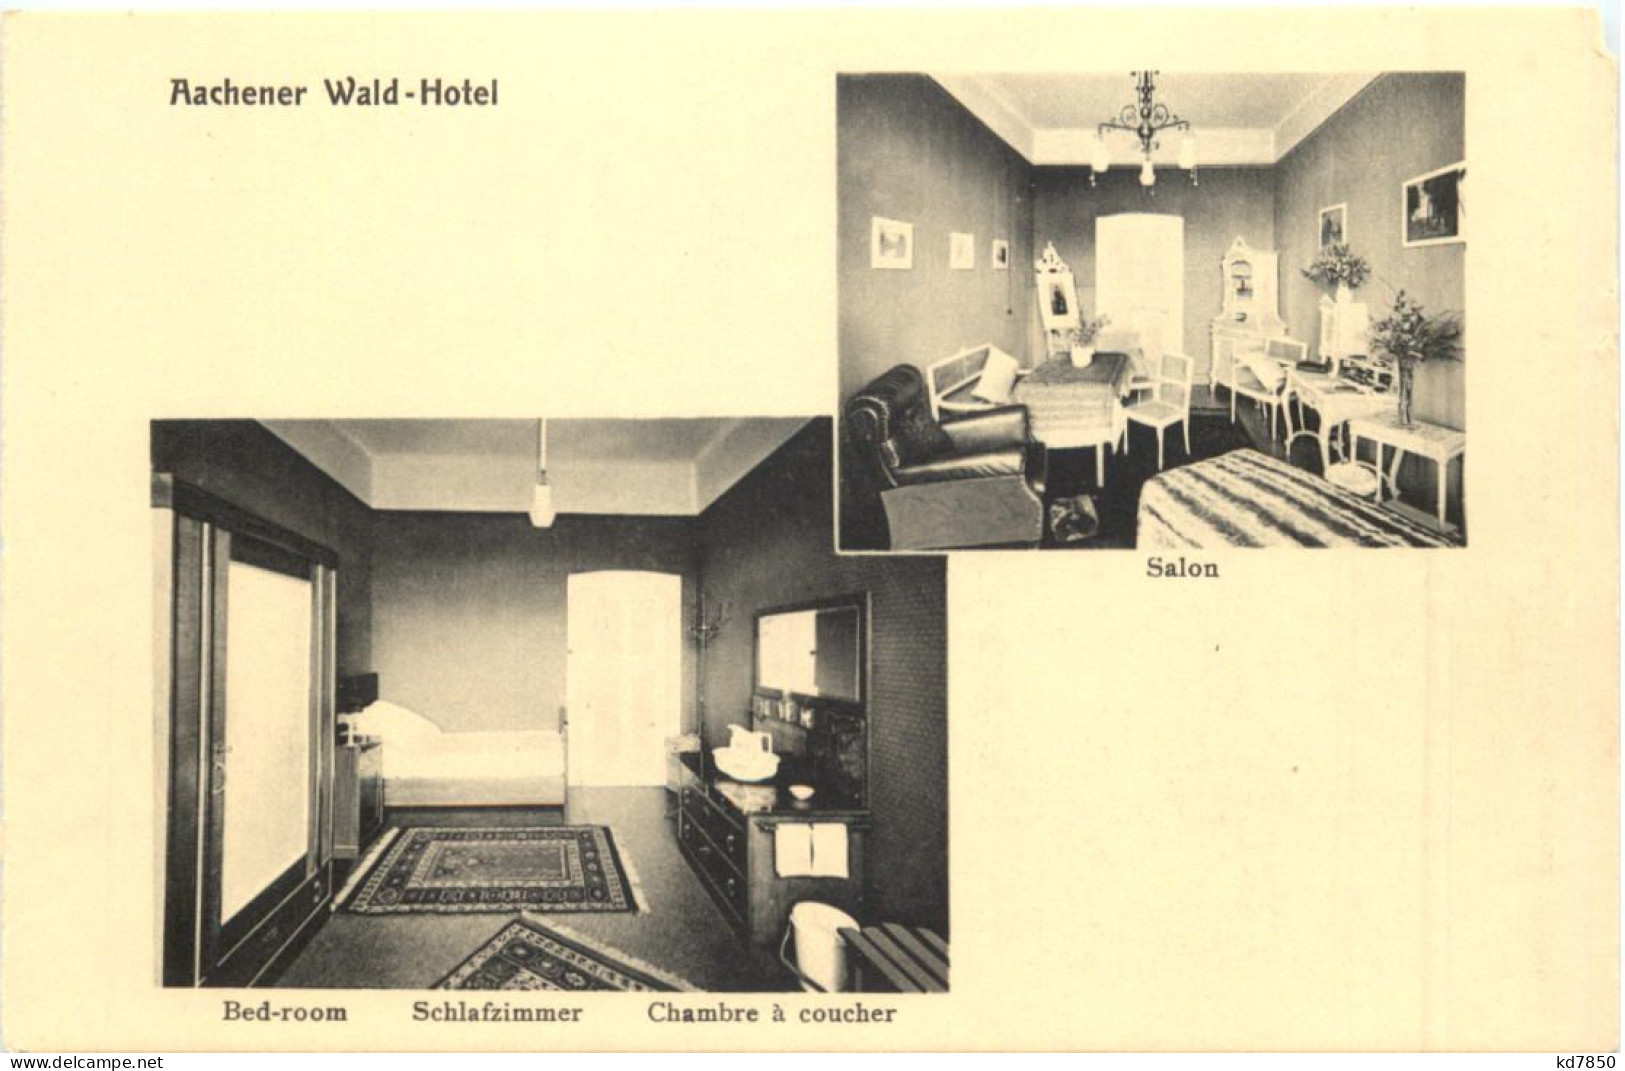 Aachen - Wald-Hotel - Aken